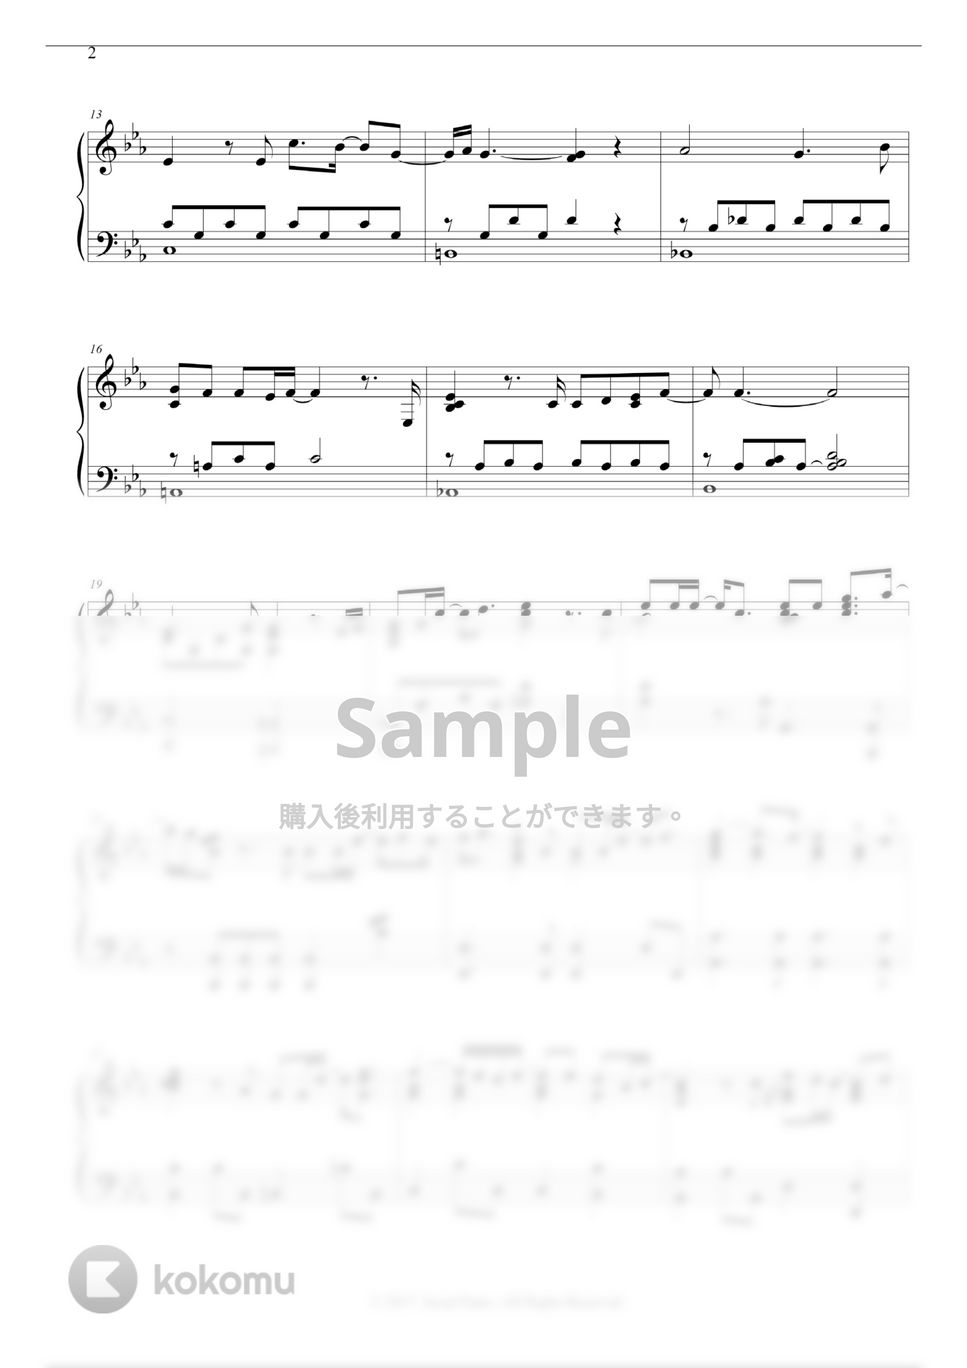 ユン・ジョンシン - 좋니 (Like it) by Seoul Piano